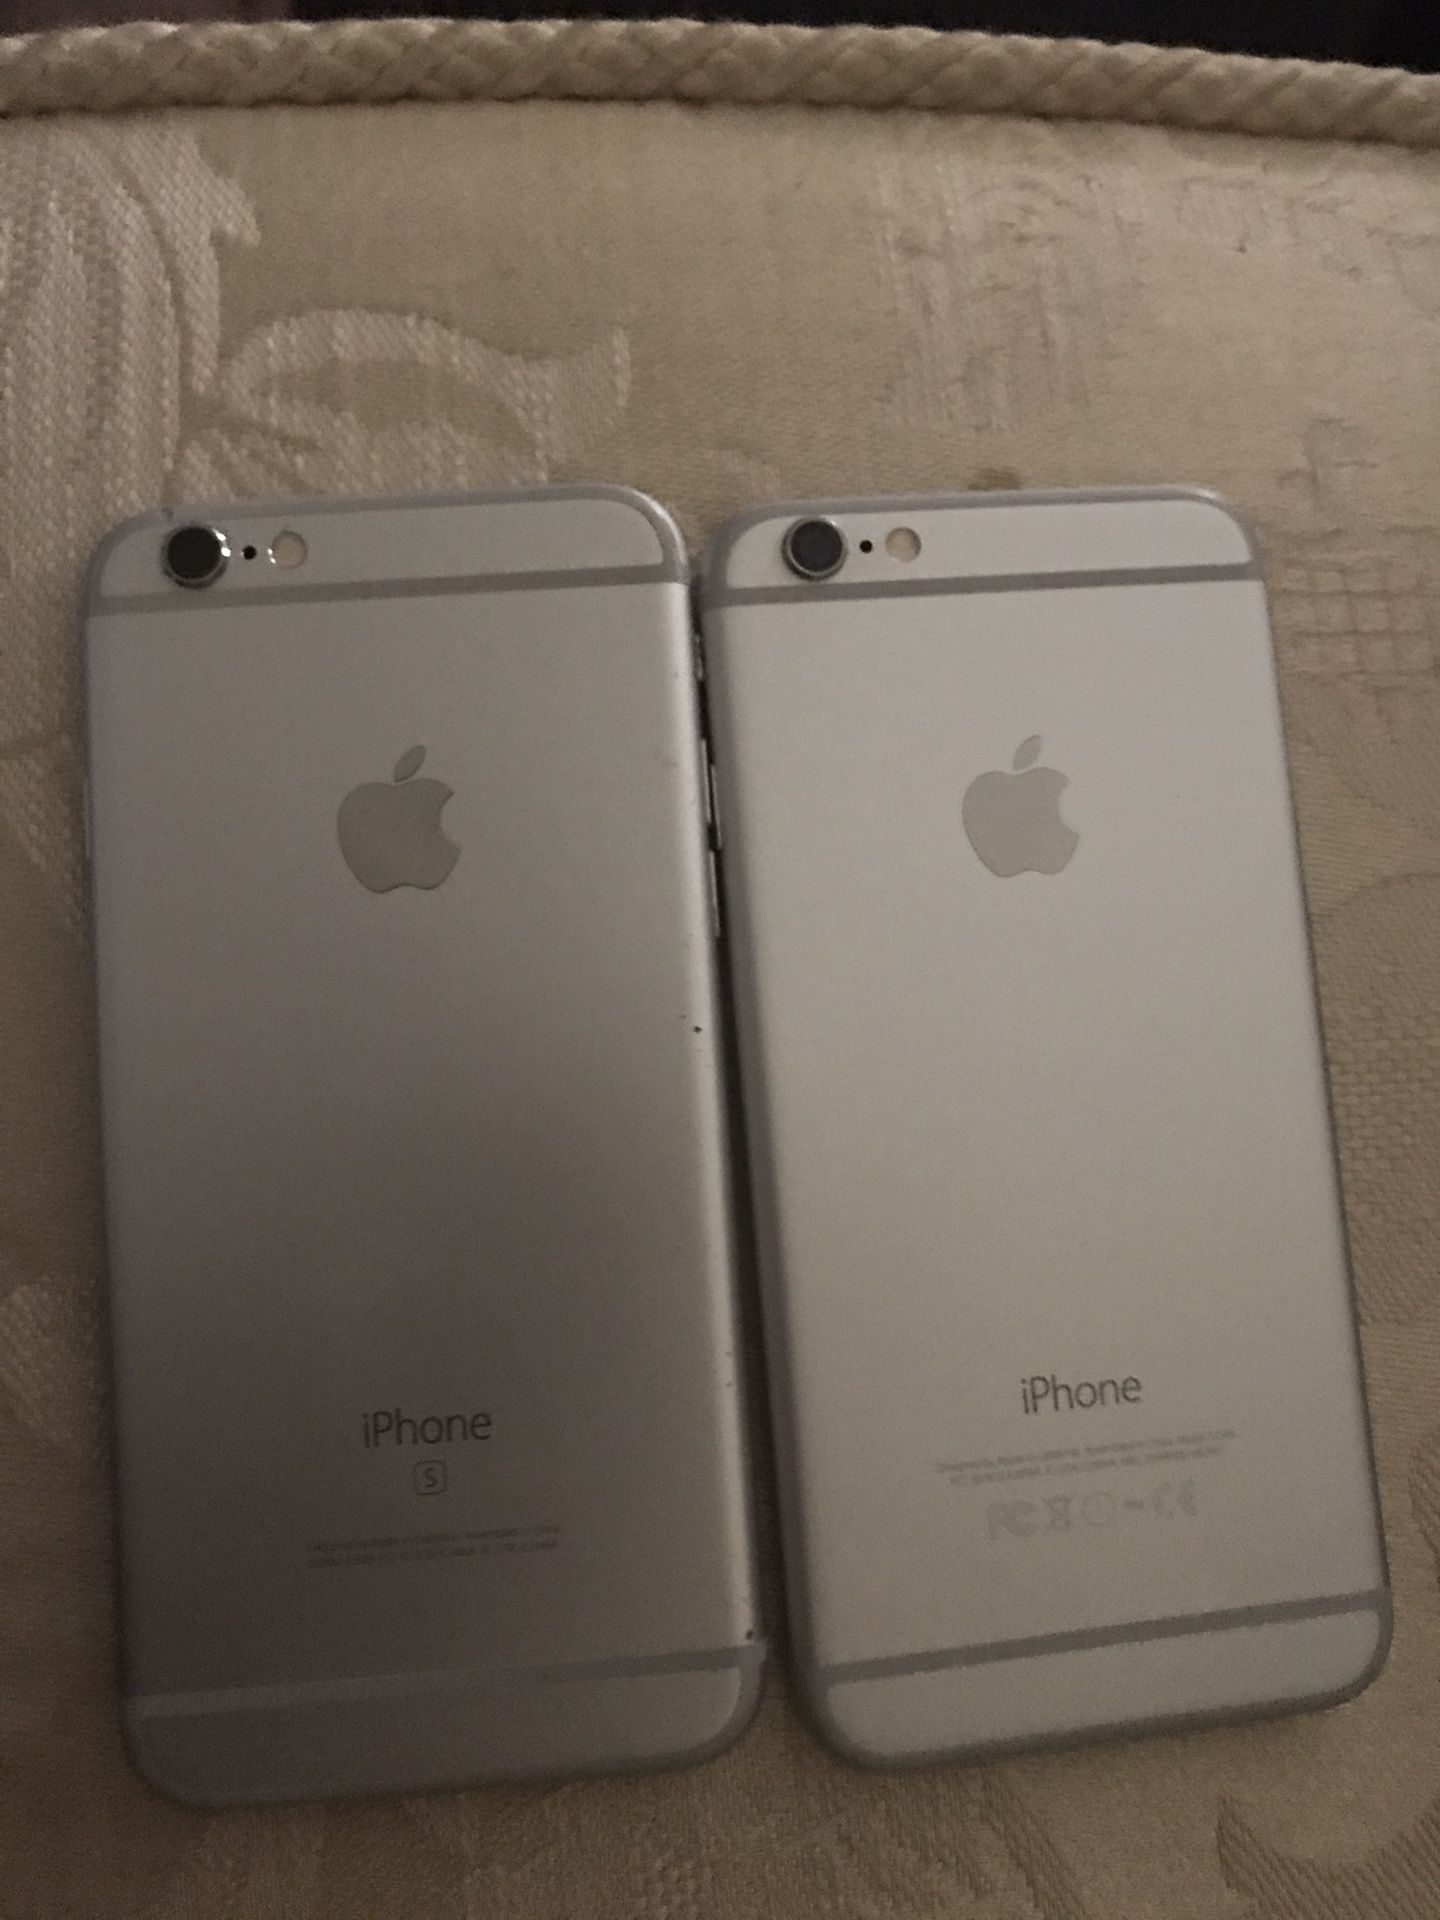 Apple iPhone 6 & 6s